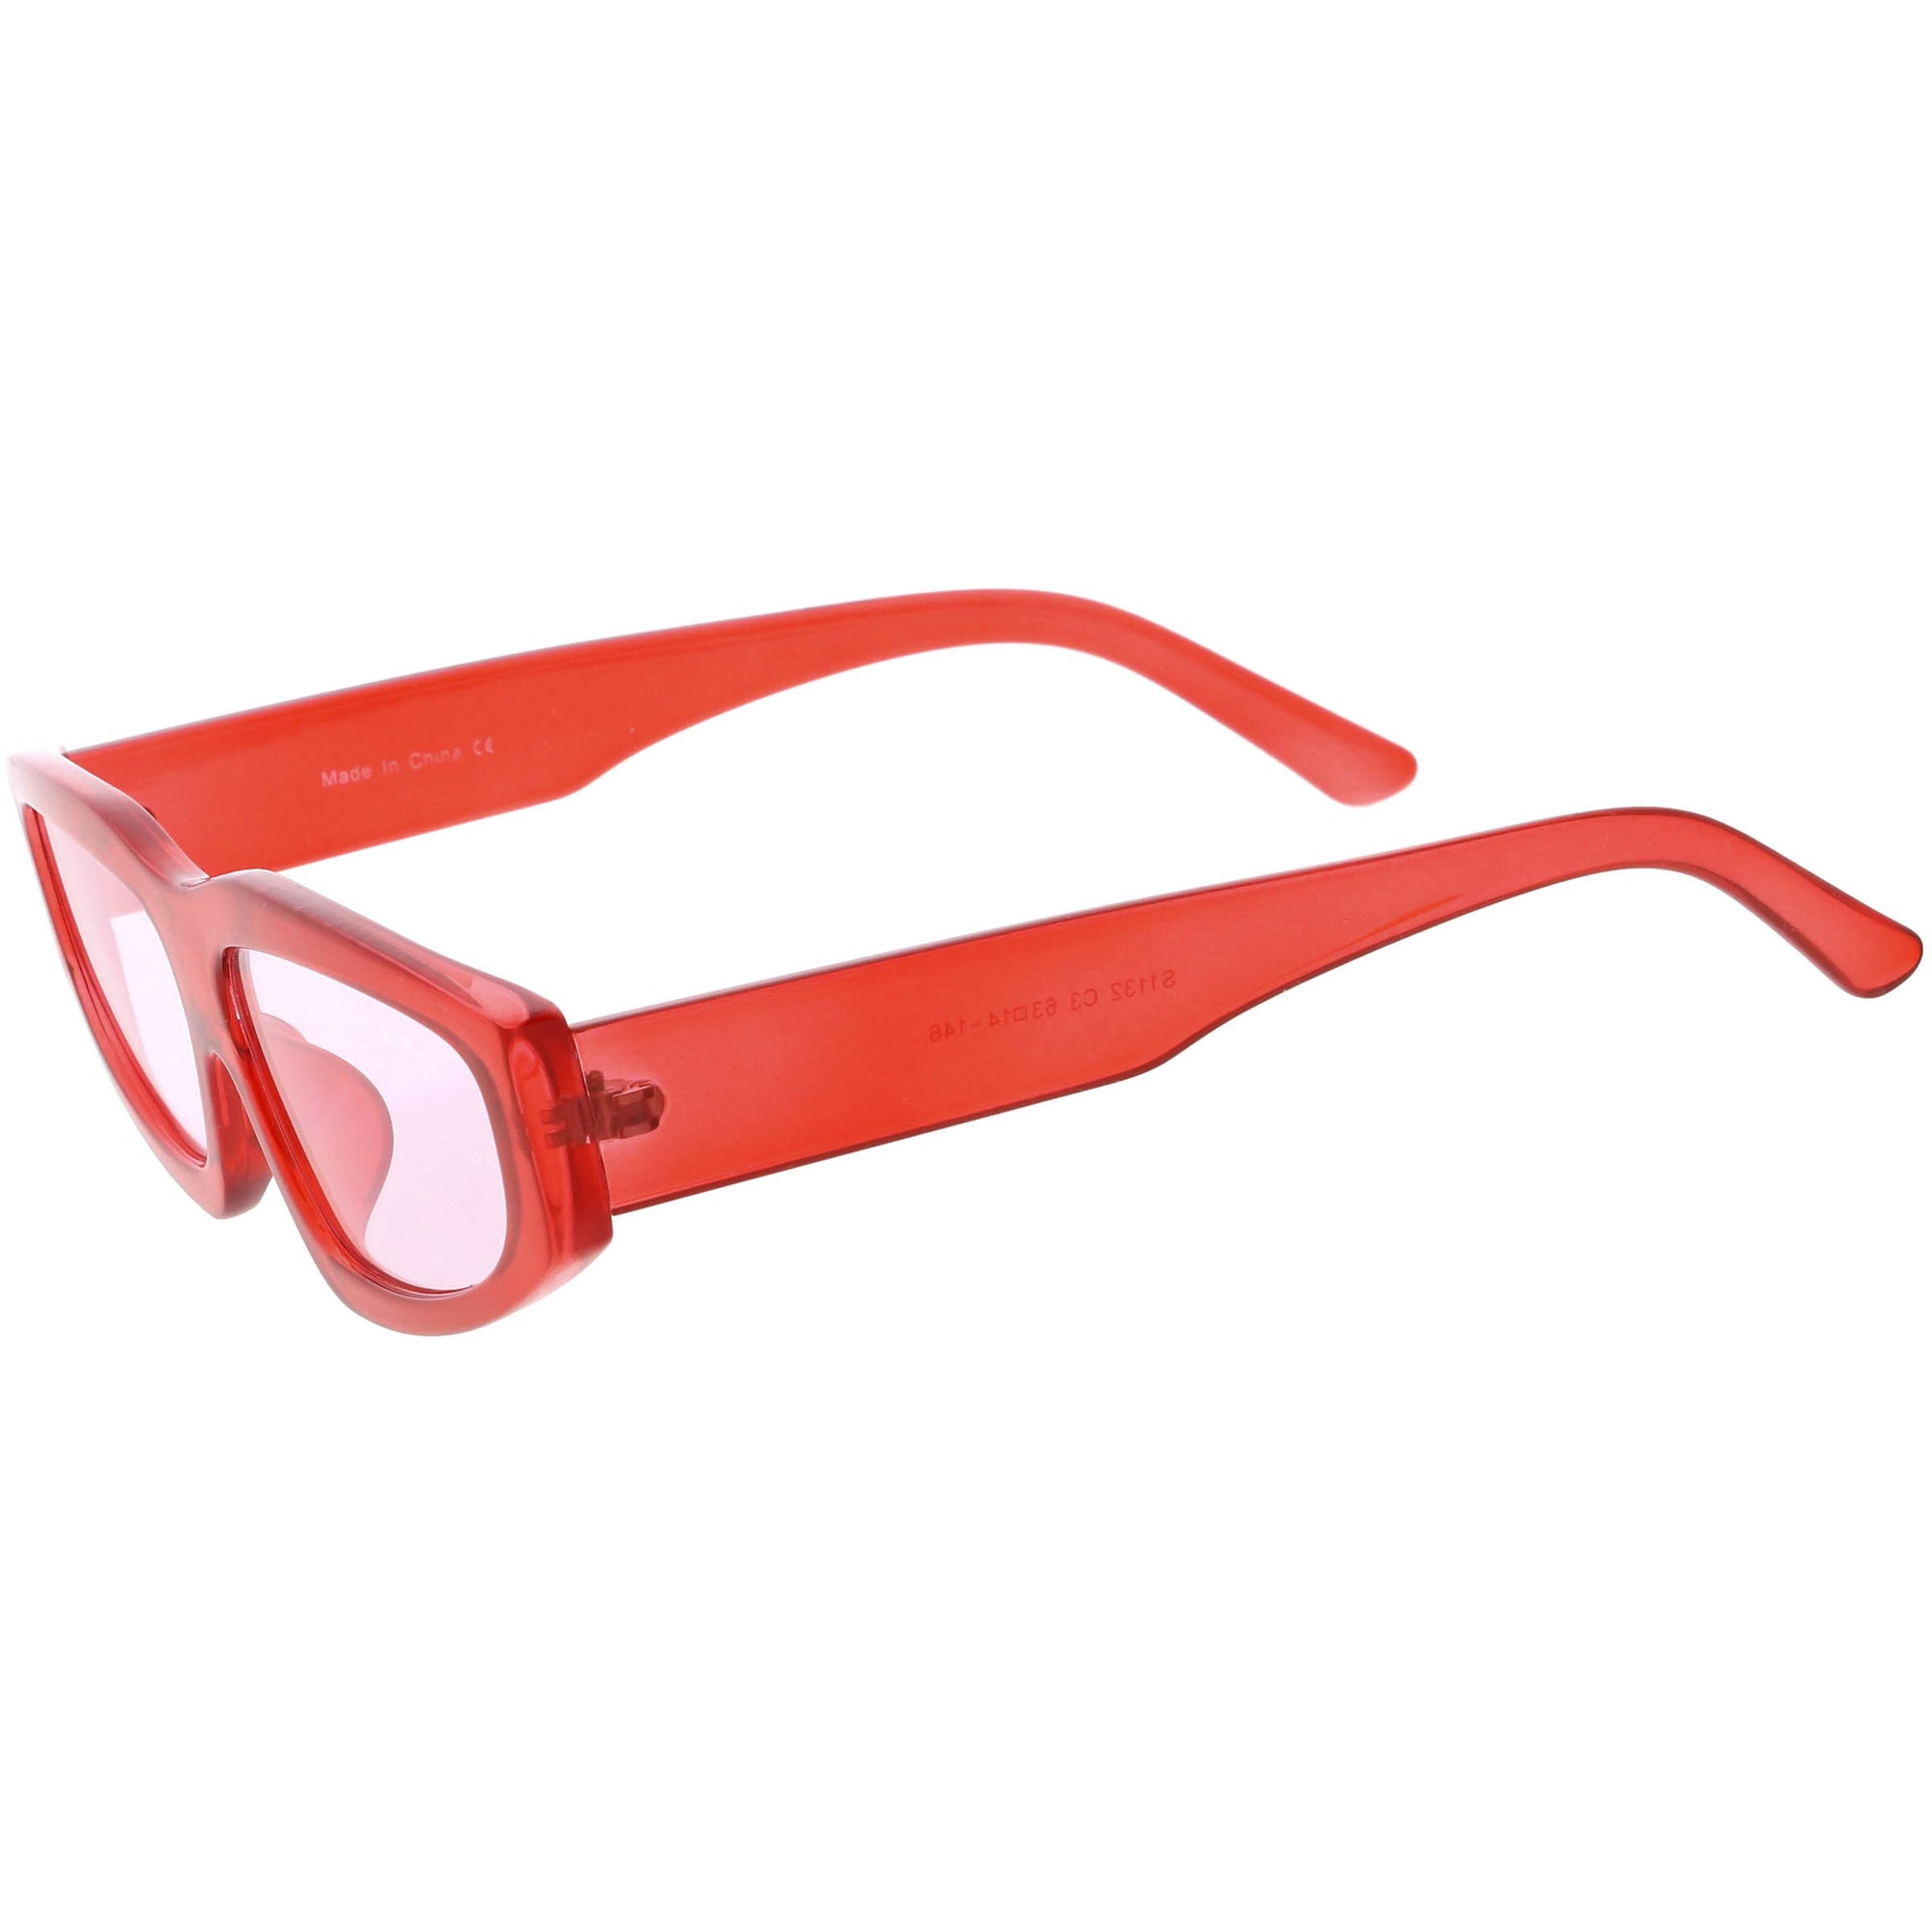 Retro Thick Frame Sunglasses Red